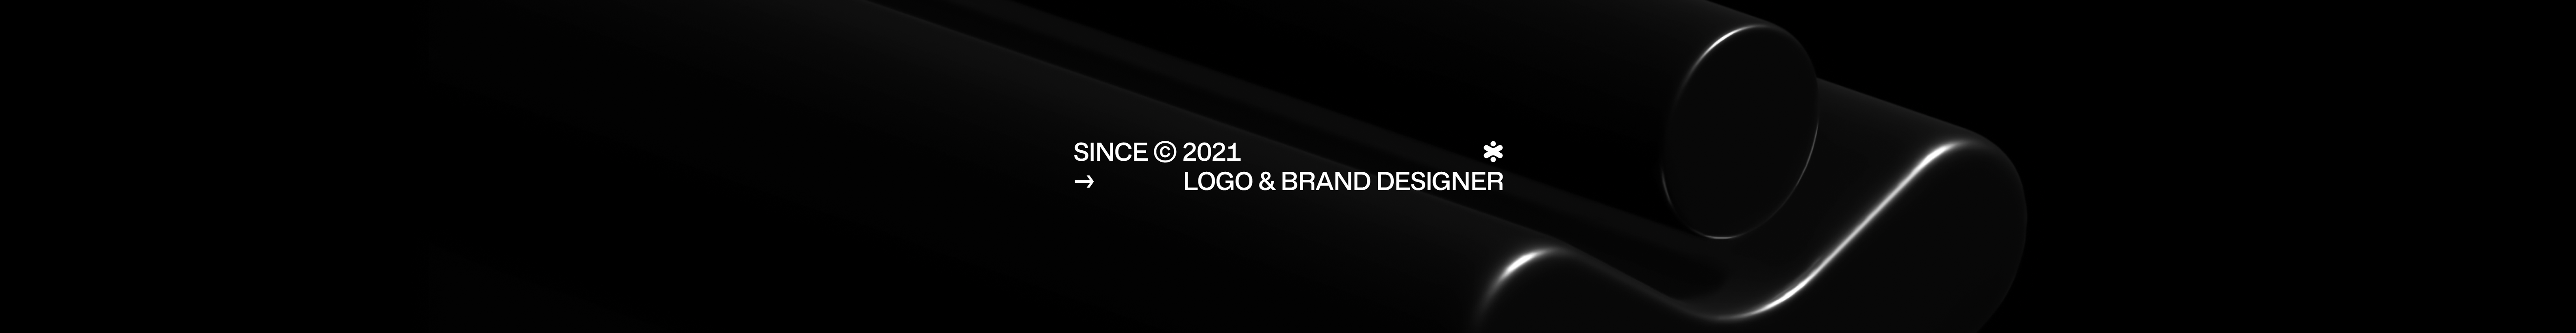 Profil-Banner von Obrazur Brands